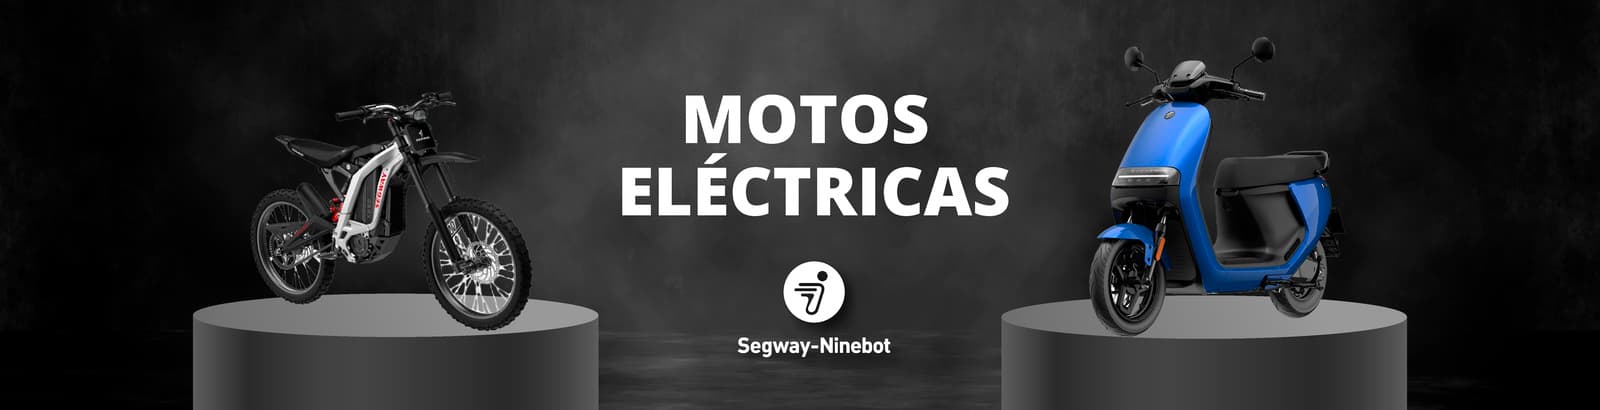 Categoria Motos Eléctricas